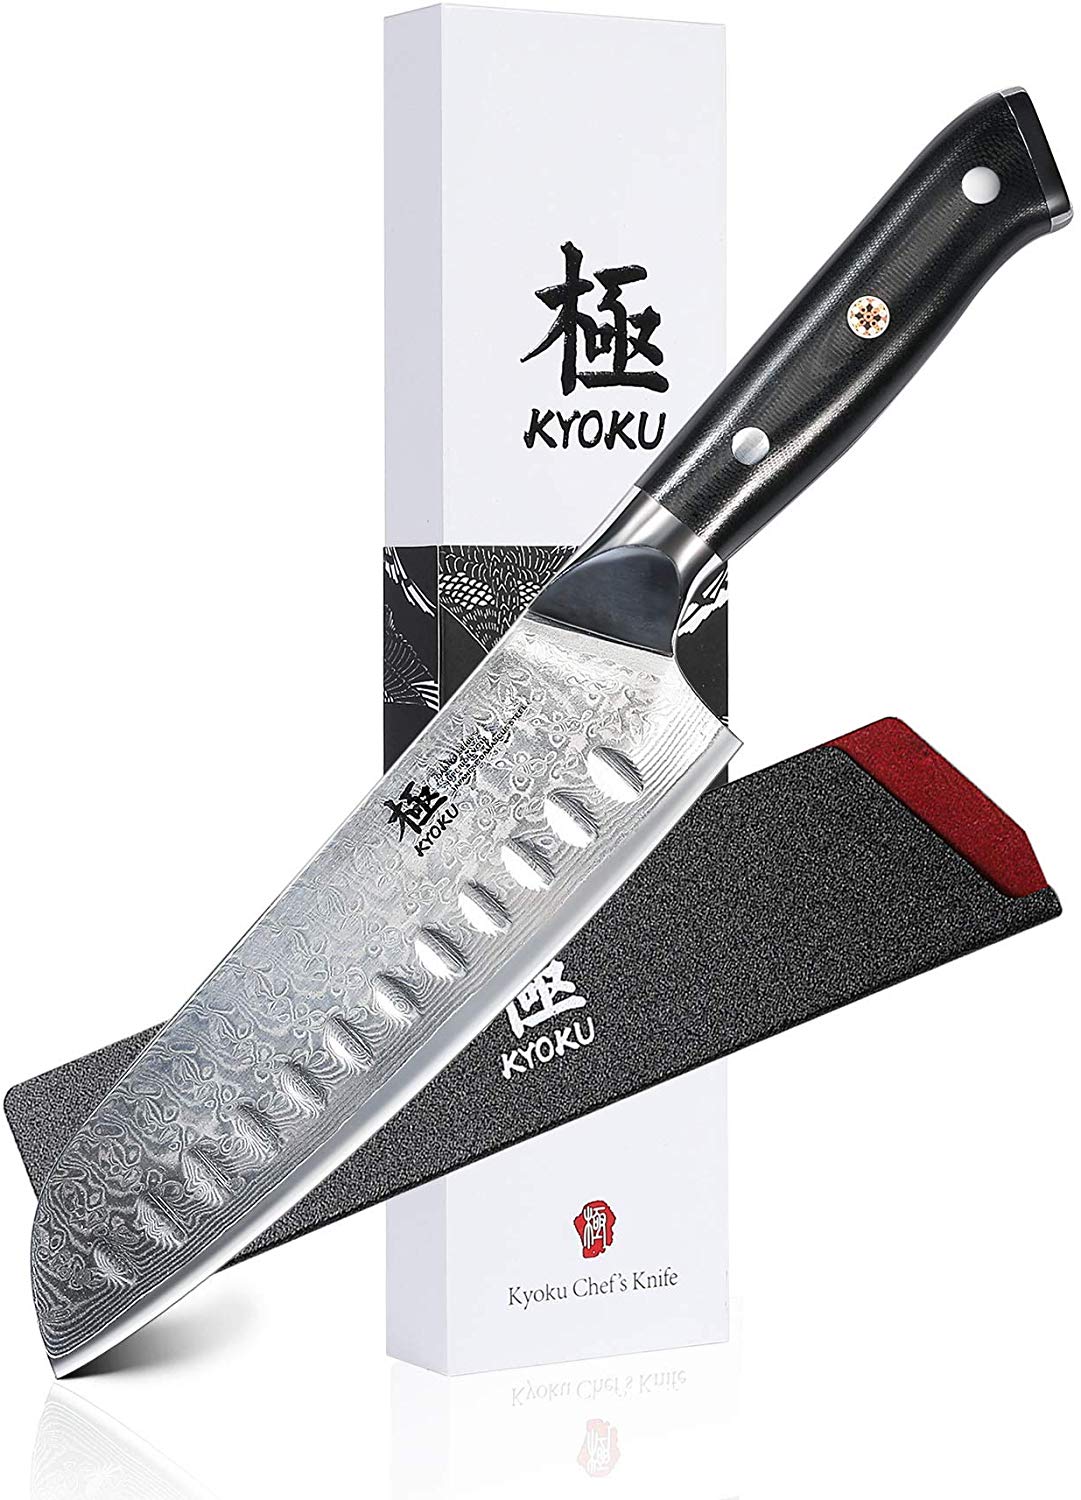 KYOKU Santoku Chef Knife with Sheath Case